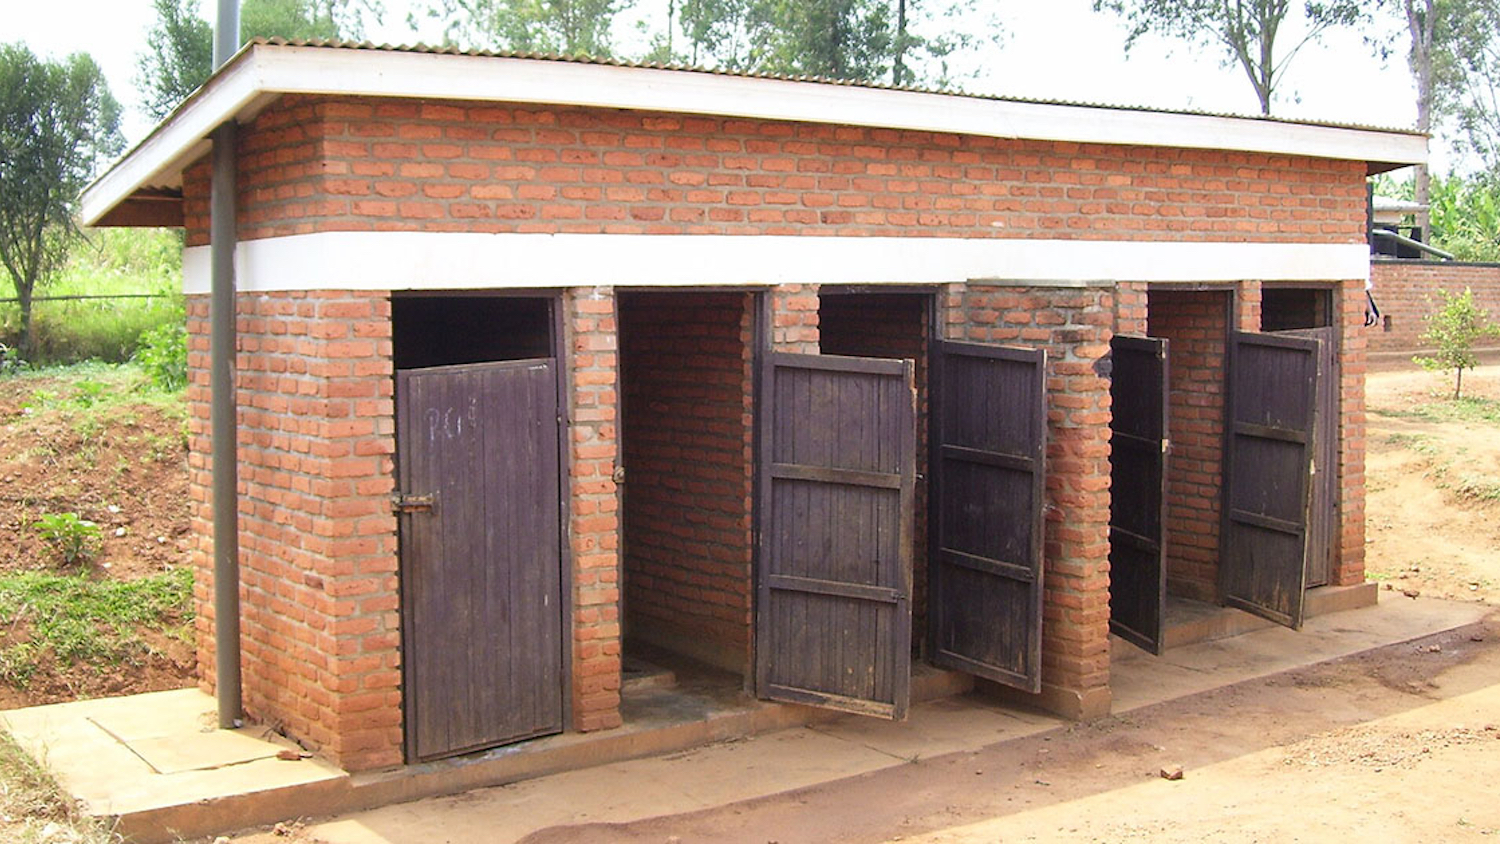 A sheltered pit latrine